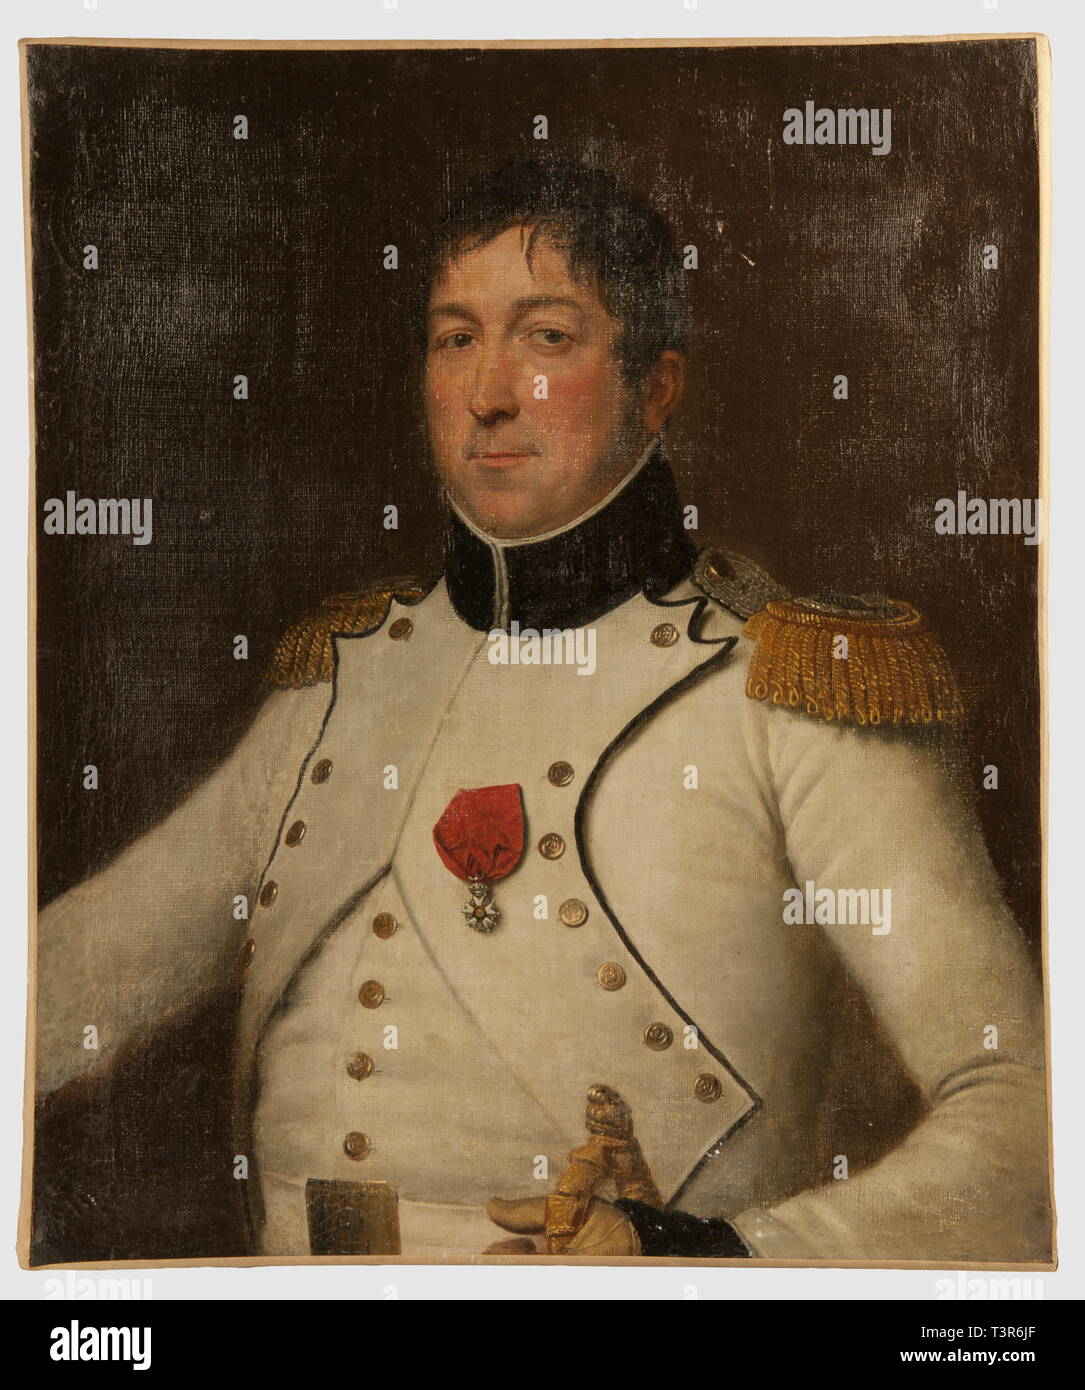 DIRECTOIRE-CONSULAT-EMPIRE 1795-1814, Portrait d'un major du 12ème régiment d'infanterie de ligne portant l'uniforme du règlement de l'infanterie de 1806, Huile sur toile, période du 1er Empire. L'officier est en habit à fond de drap blanc, col et parements de panne noire passepoilés de blanc, revers blancs passepoilés de noir, boutons plats dorés au chiffre 12, épaulettes de major en cannetille et fil d'or et d'argent, attentes d'épaulettes en fil d'or, gilet blanc uni, ceinturon de buffle blanc fermé par un plateau de cuivre doré à flancs abattus et, Artist's Copyright has not to be cleared Stock Photo